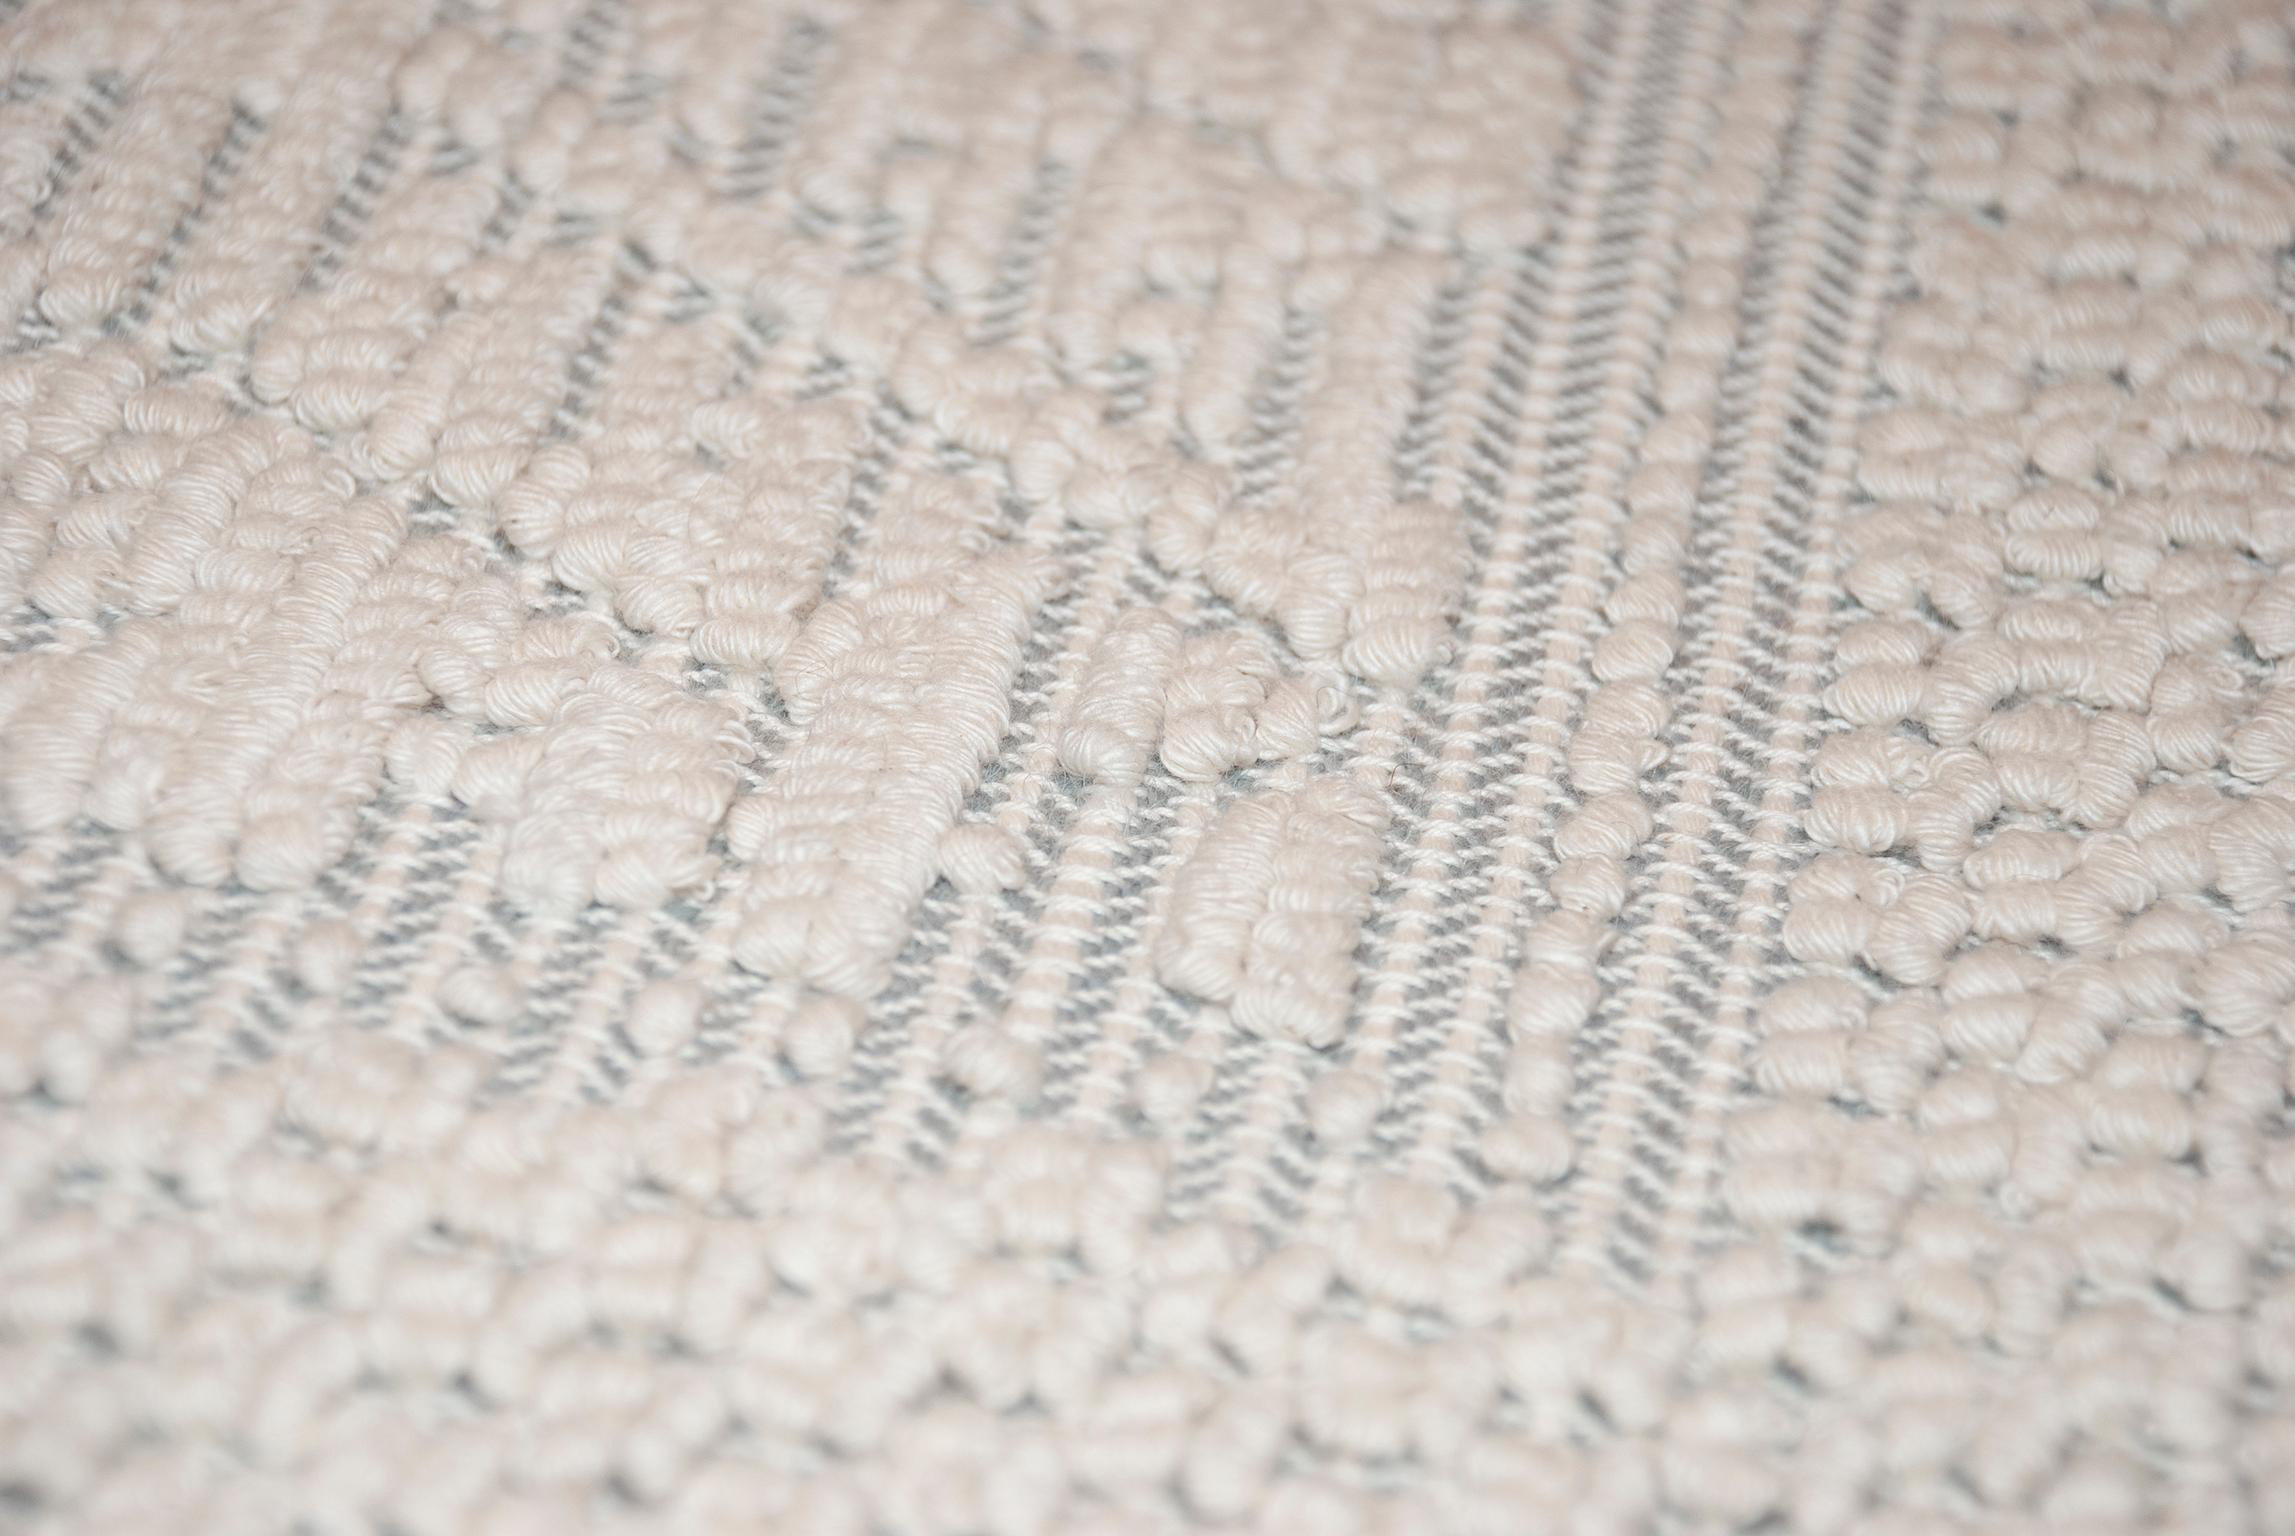 Contemporary Handwoven Sardinian Carpet
Sardinia Italy
50% Linen, 50% Cotton .